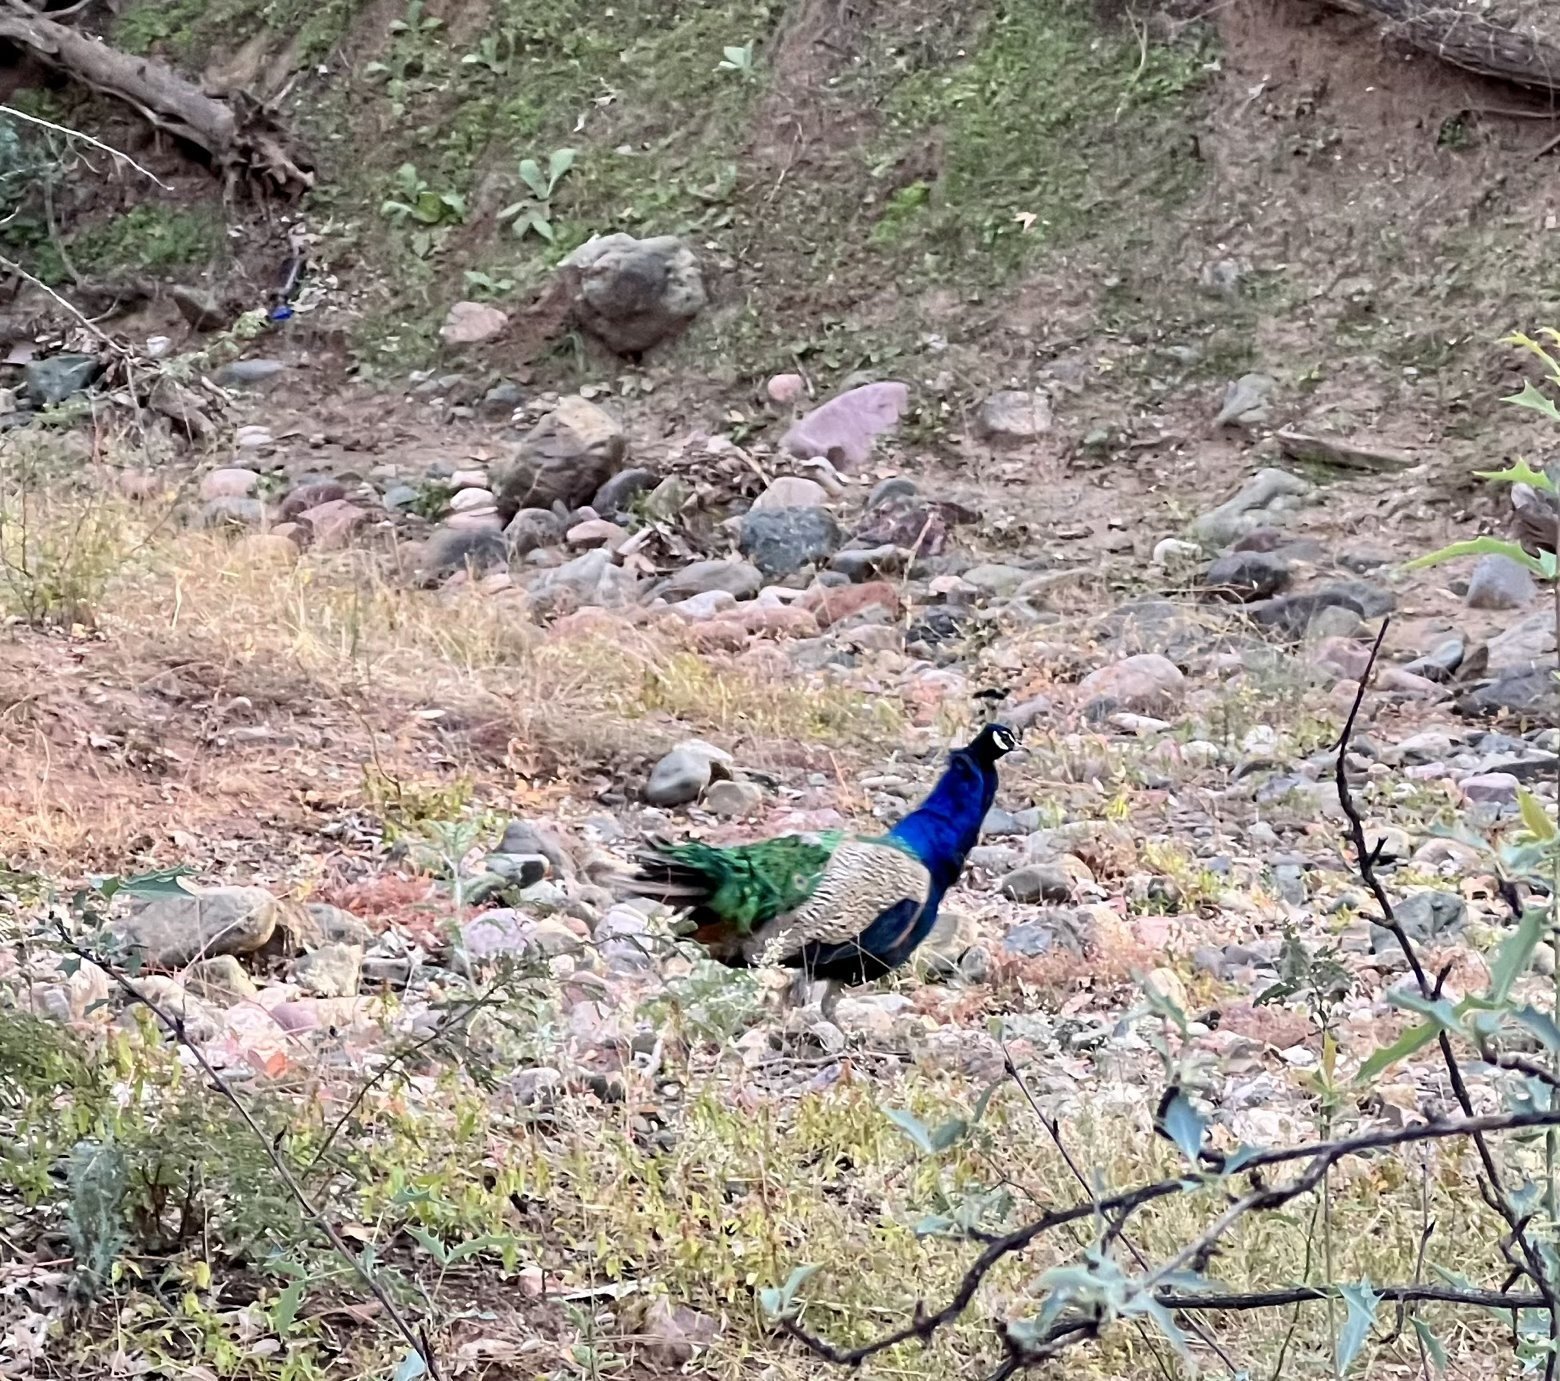 Peacock dashing away to safety